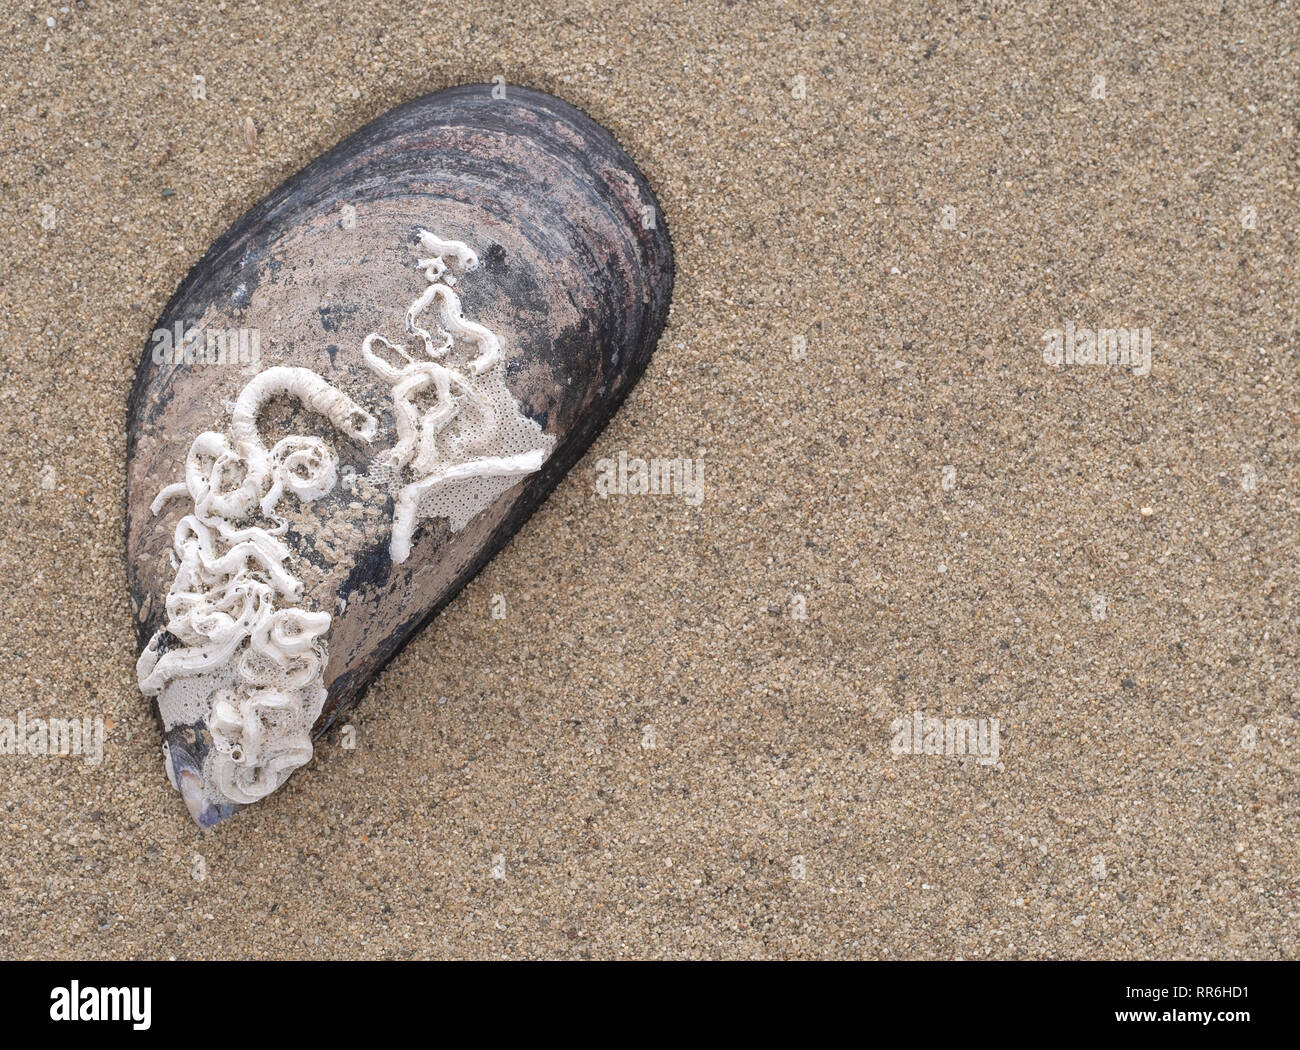 Cozze con guscio calcareo naturale tubi realizzati da vermi marini, come specie Pomatoceros. Trovato sulla spiaggia. Foto Stock